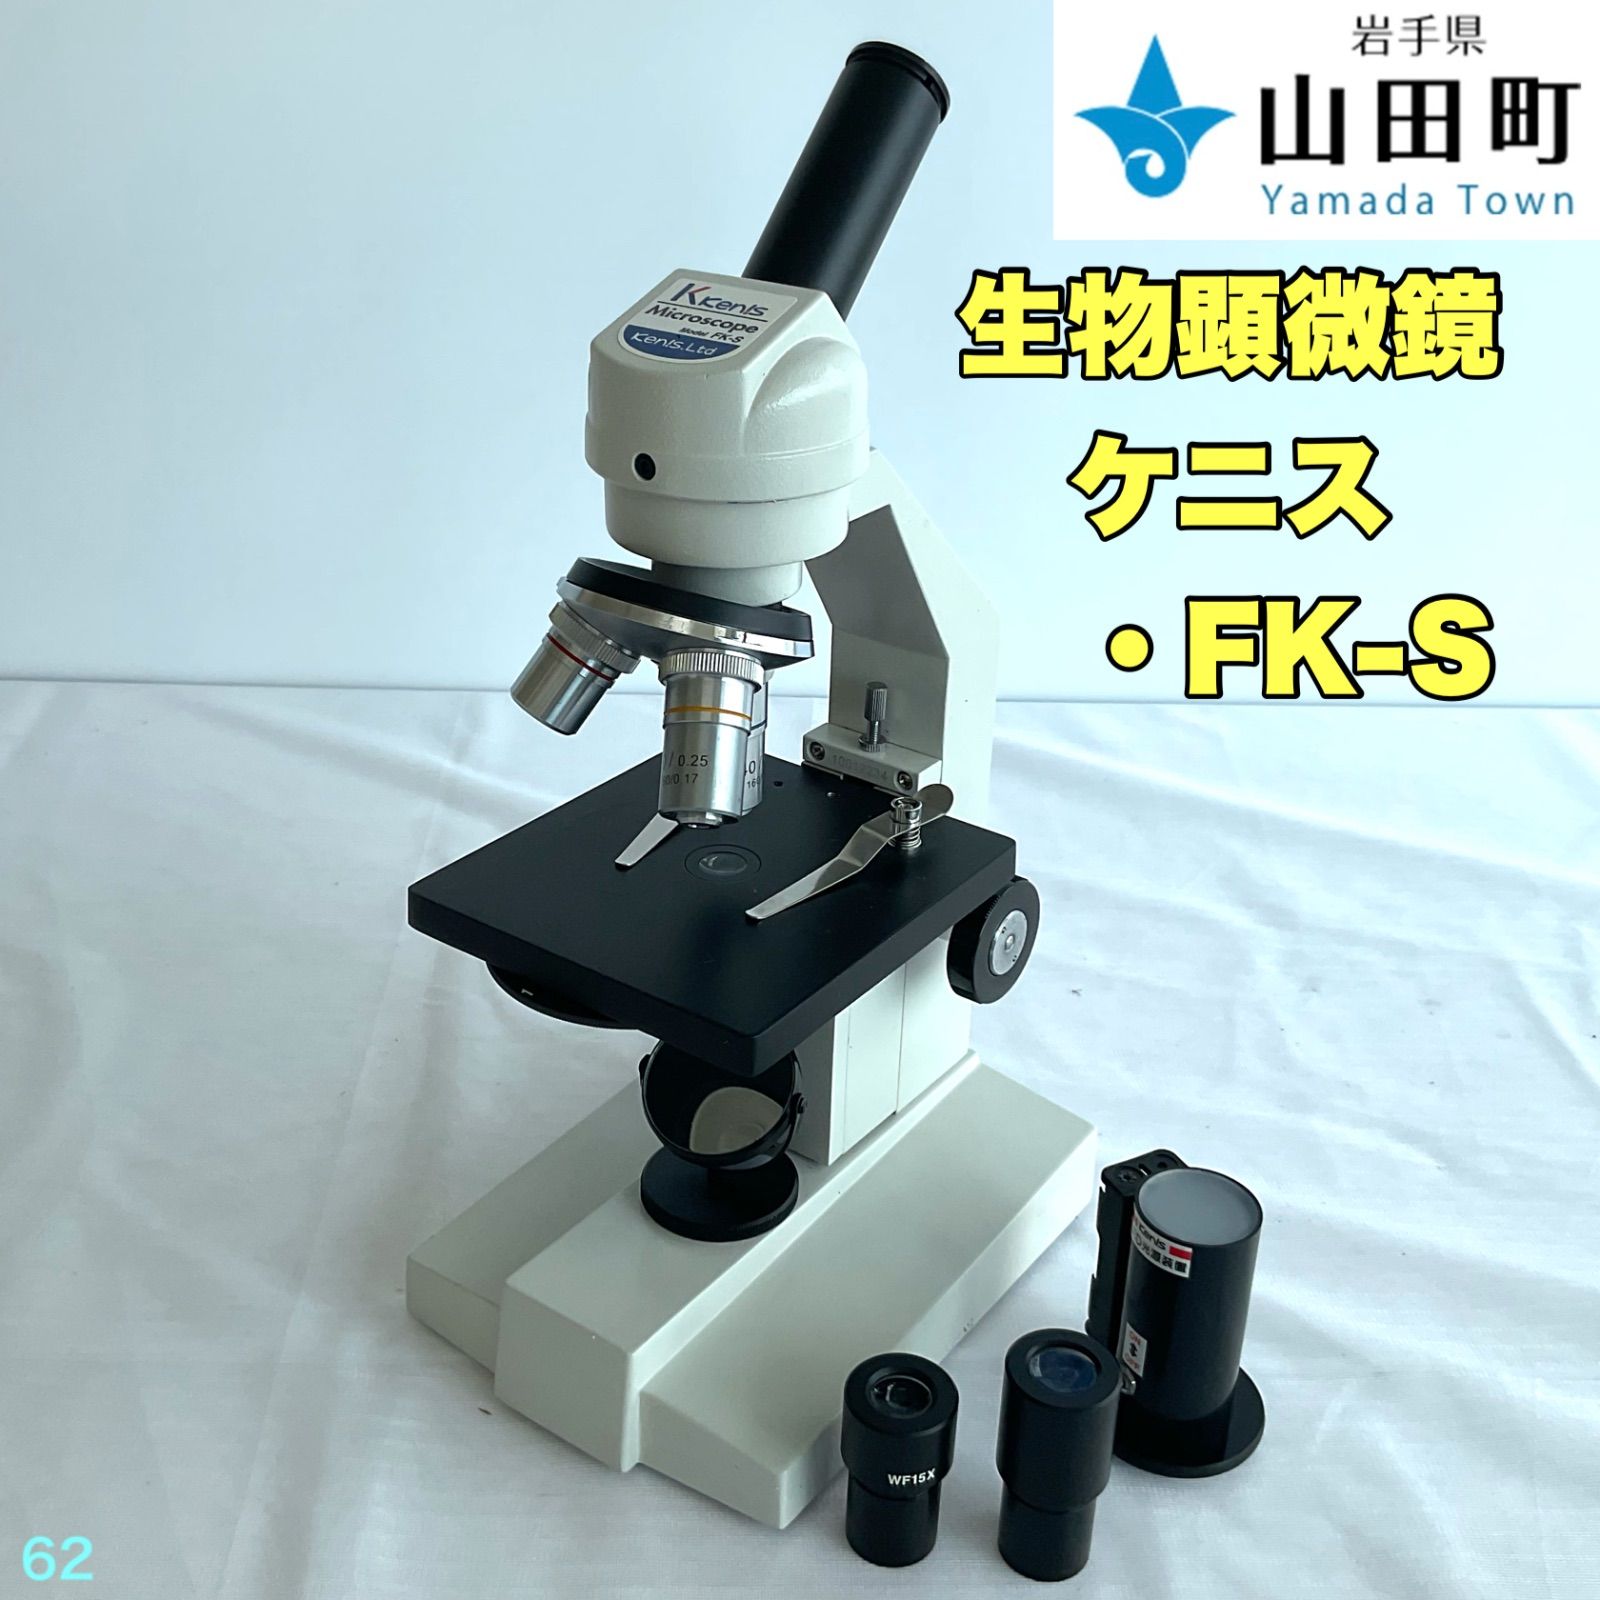 生物顕微鏡 ケニス・FK-S 【osw-062】 - 岩手県山田町役場 - メルカリ